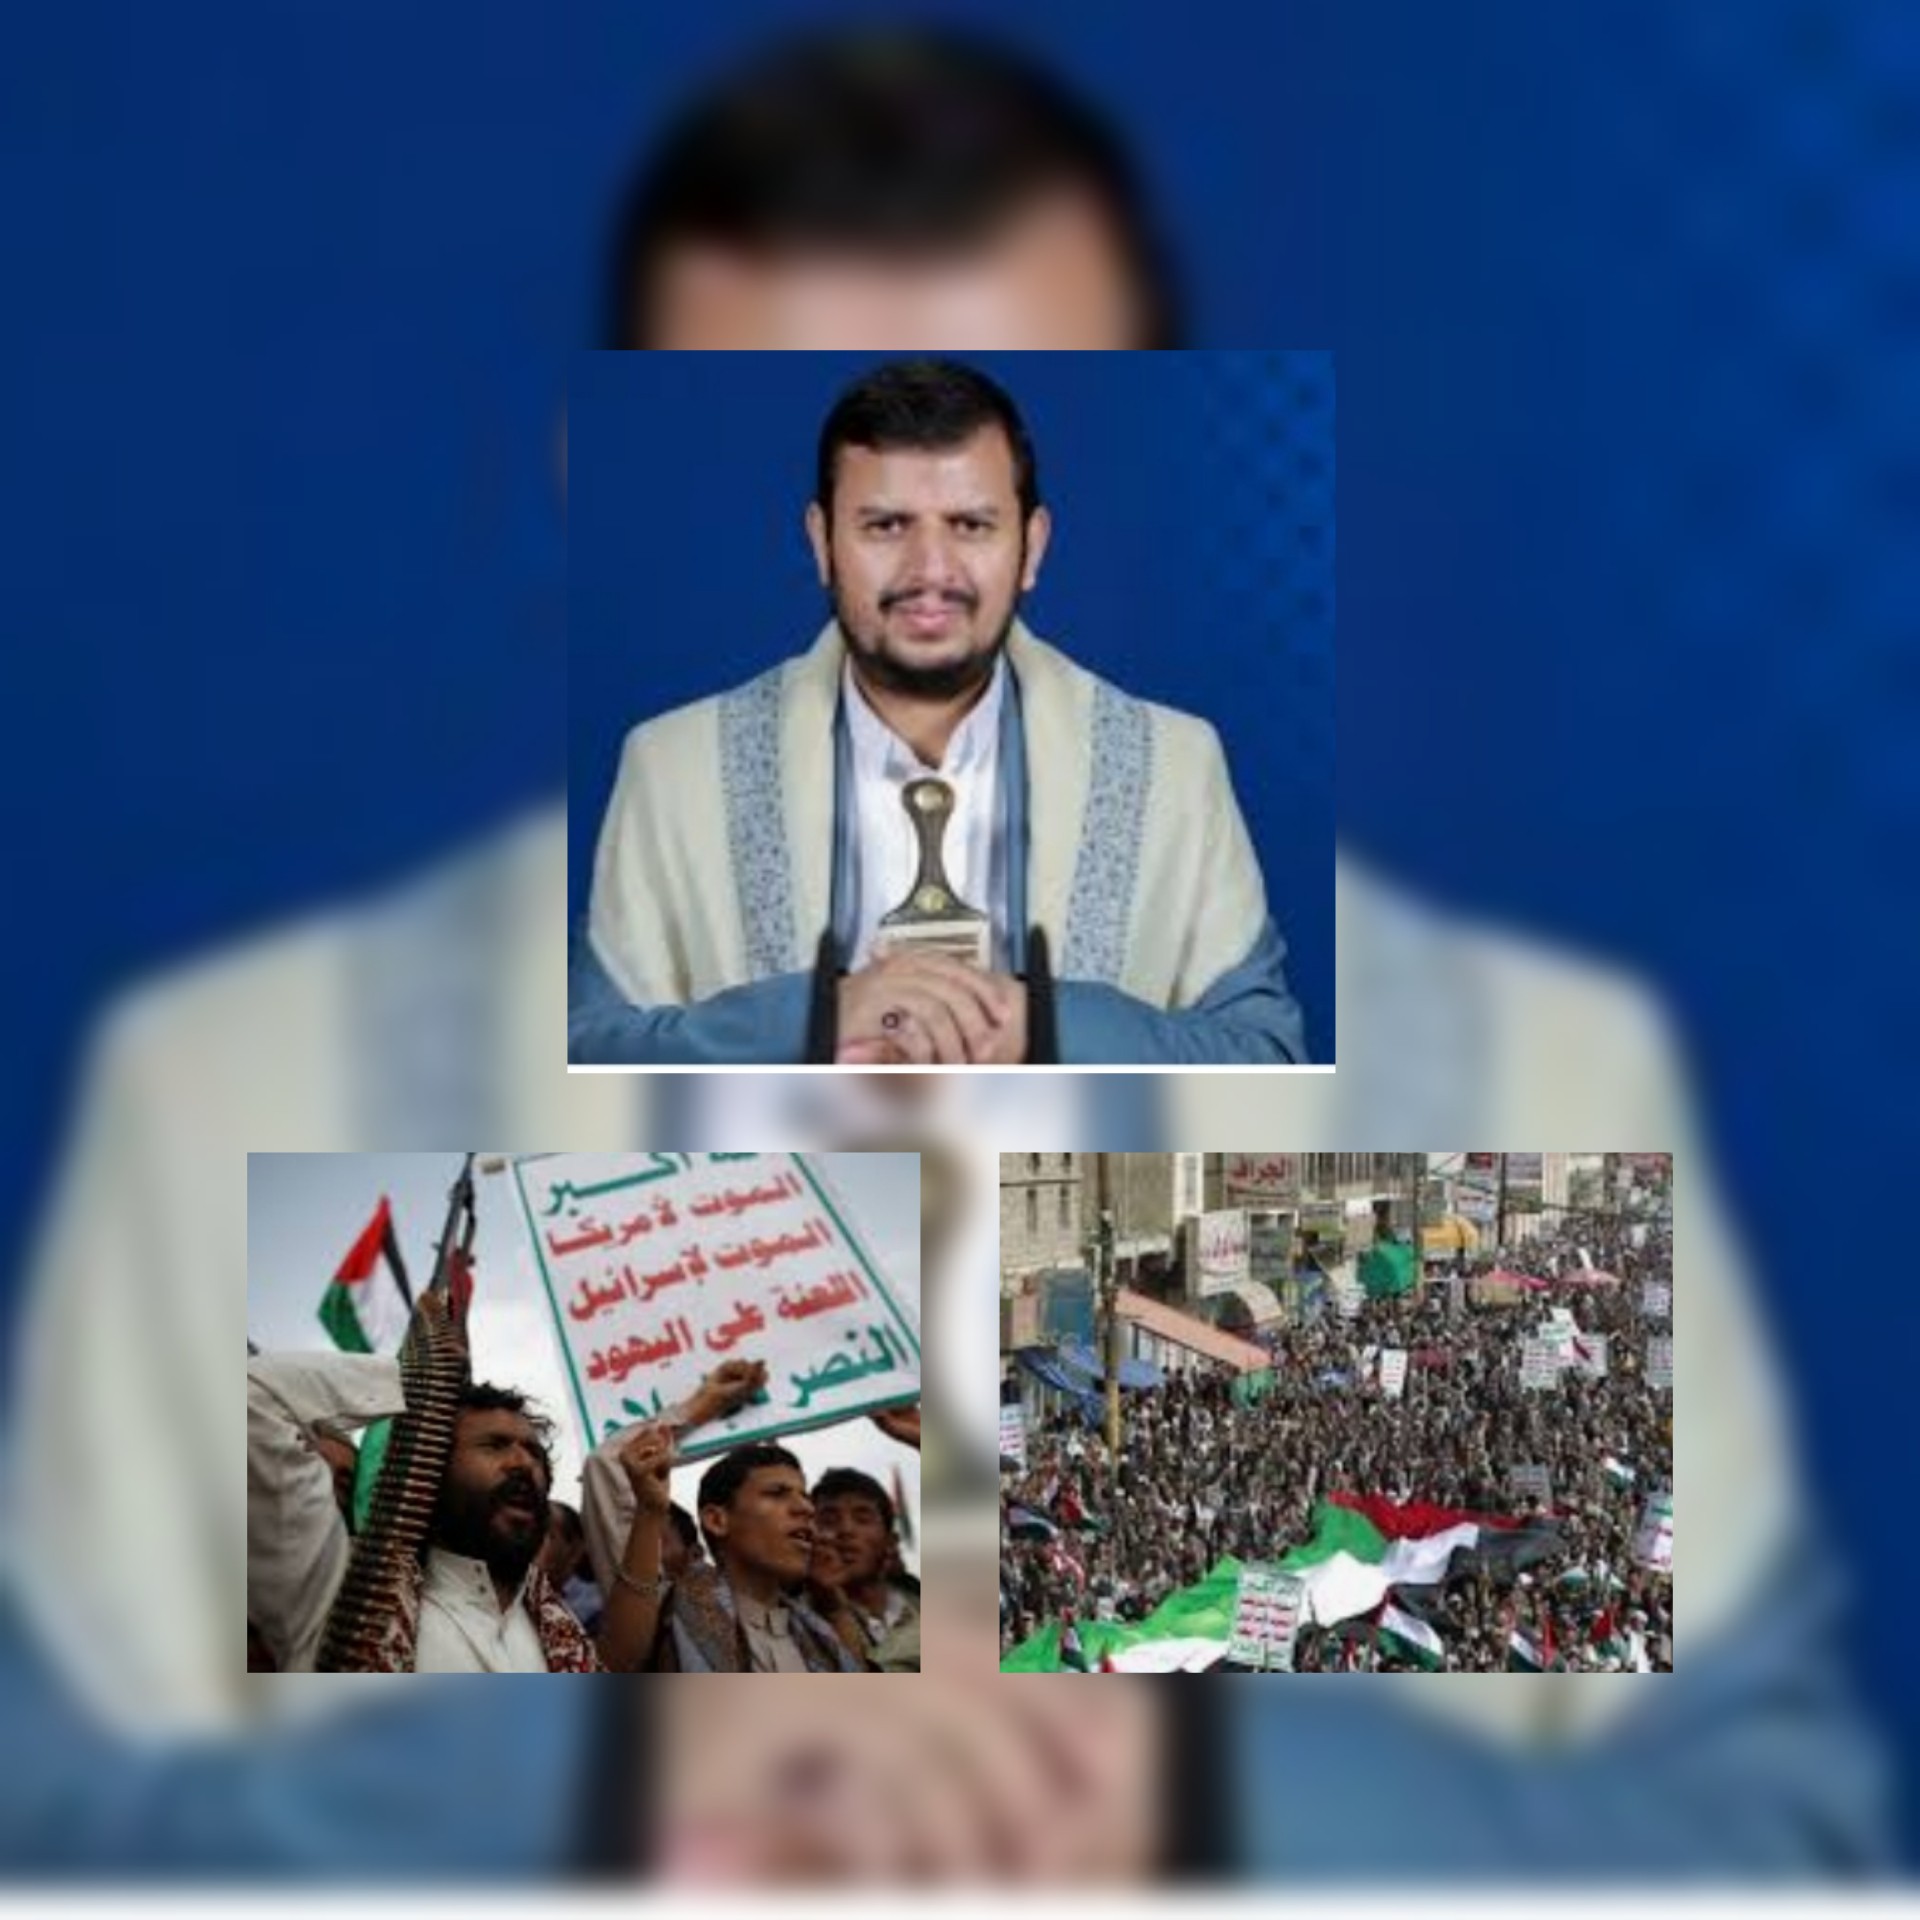 الحوثيون واليهود .....تقرير مفصل قُدم إلى منظمة الإتحاد الأوروبي / ايلي كوهانيم نائب للمبعوث الخاص بمكافحة معاداة السامية في الخارجية الأمريكية